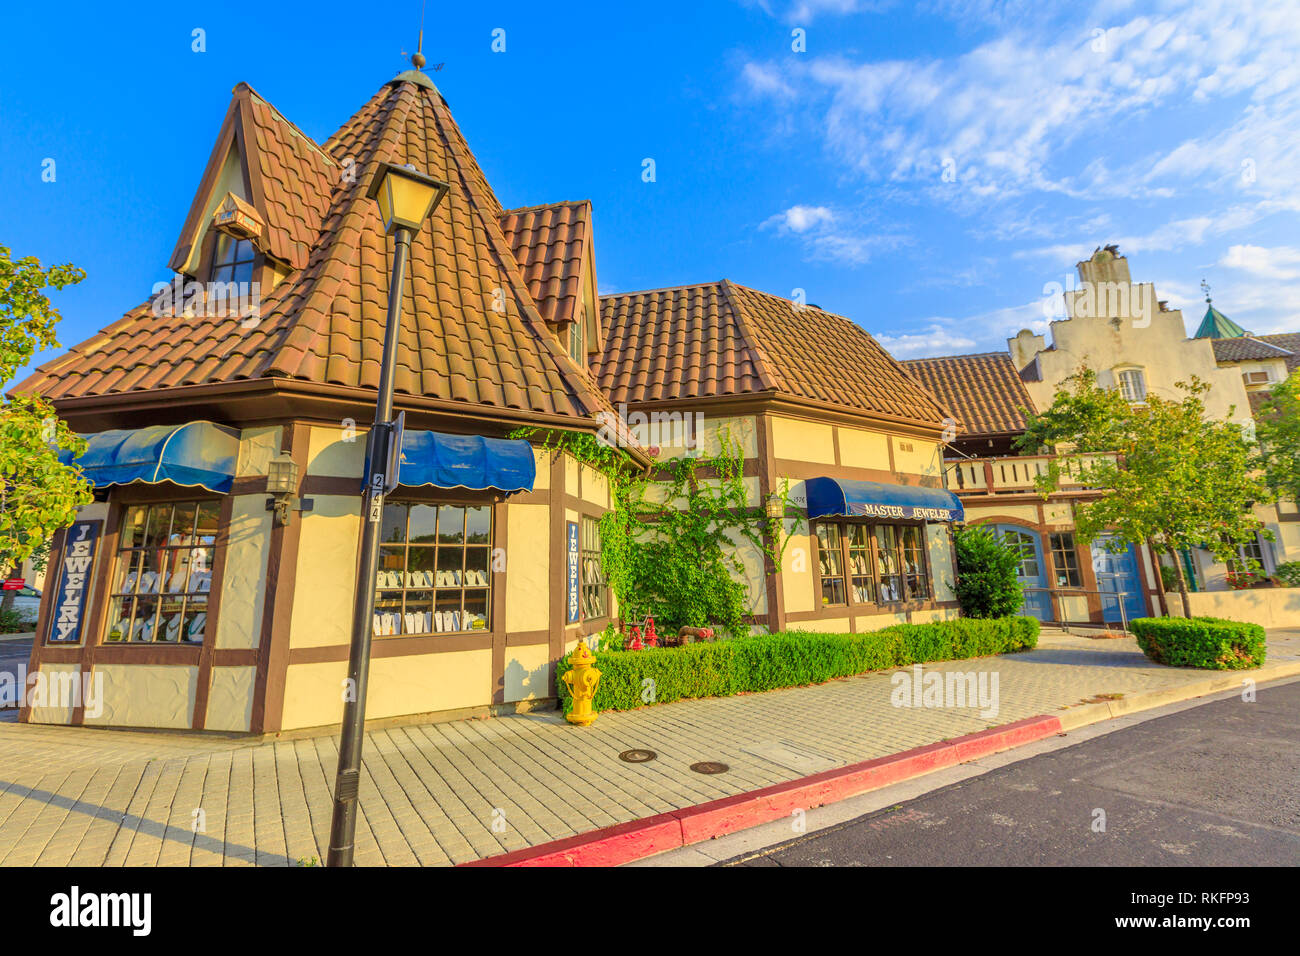 Solvang, Kalifornien, Vereinigte Staaten - 10 August 2018: traditionelle Geschäfte im typisch dänischen Dorf Solvang berühmt für europäische Architektur in Stockfoto